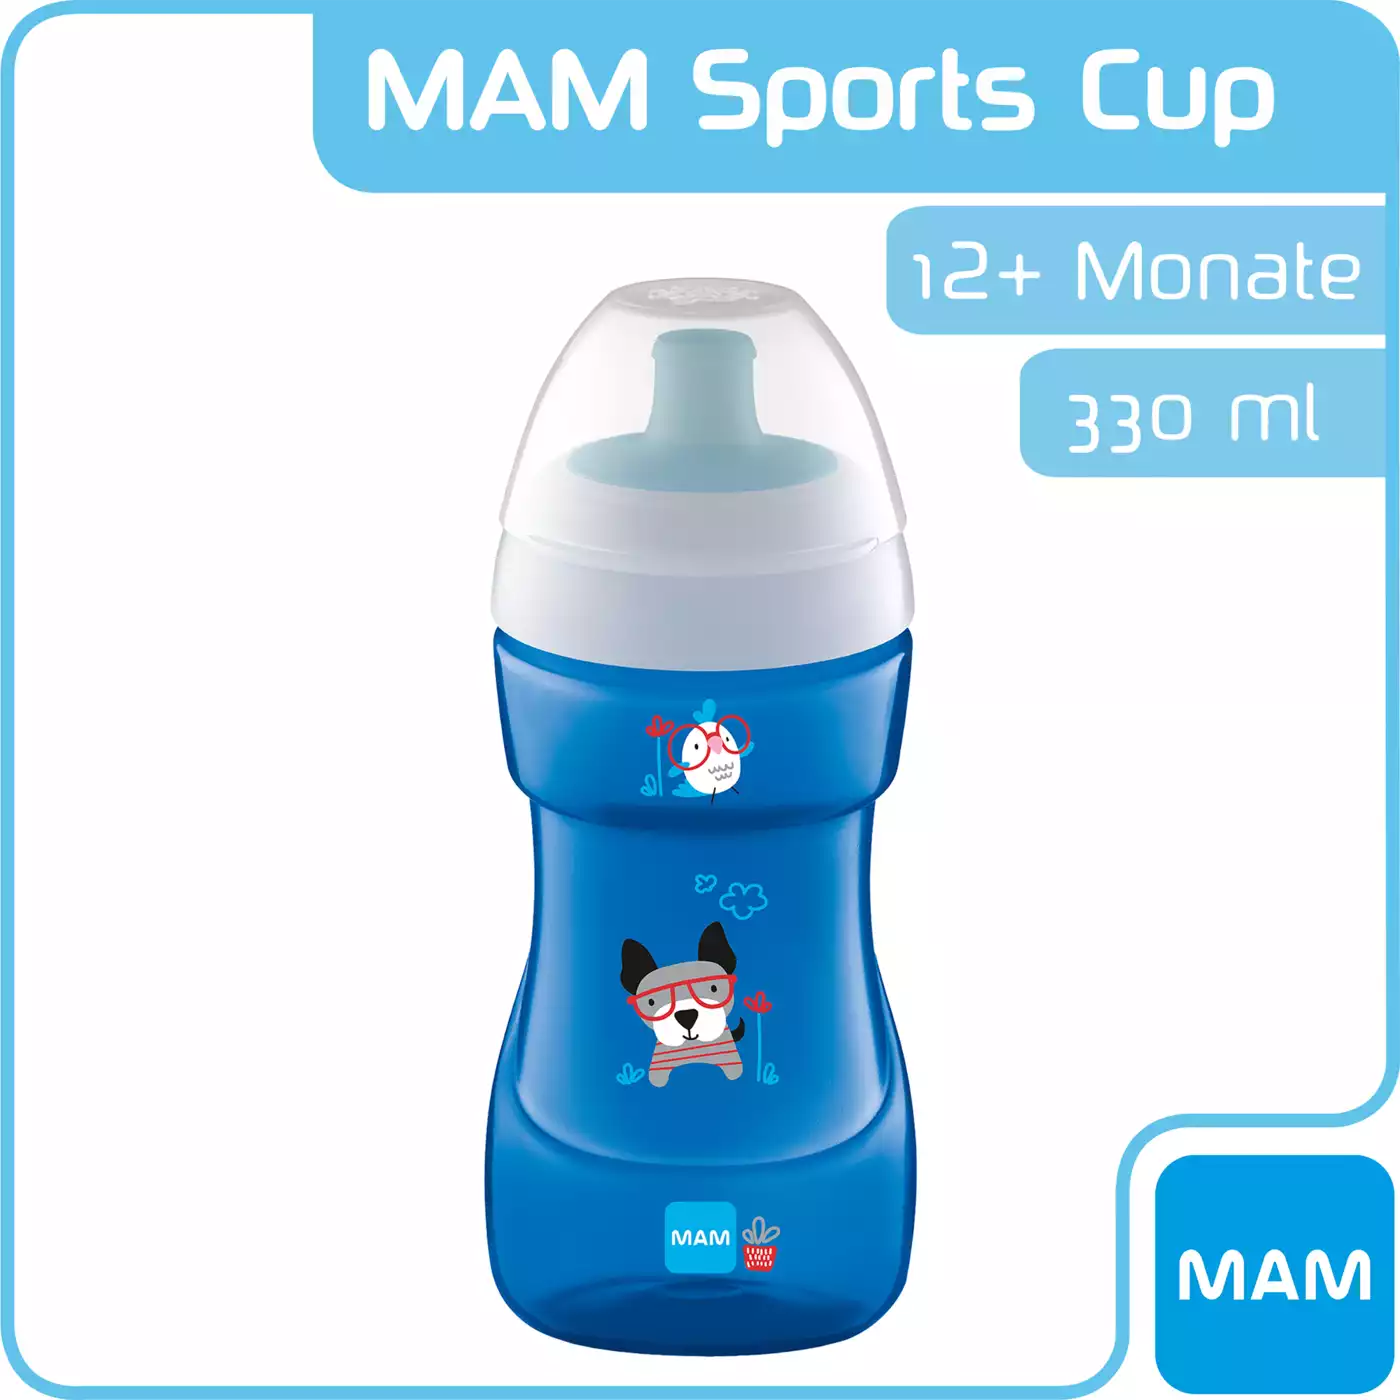 Sports Cup 330ml MAM Blau 2000562917516 5